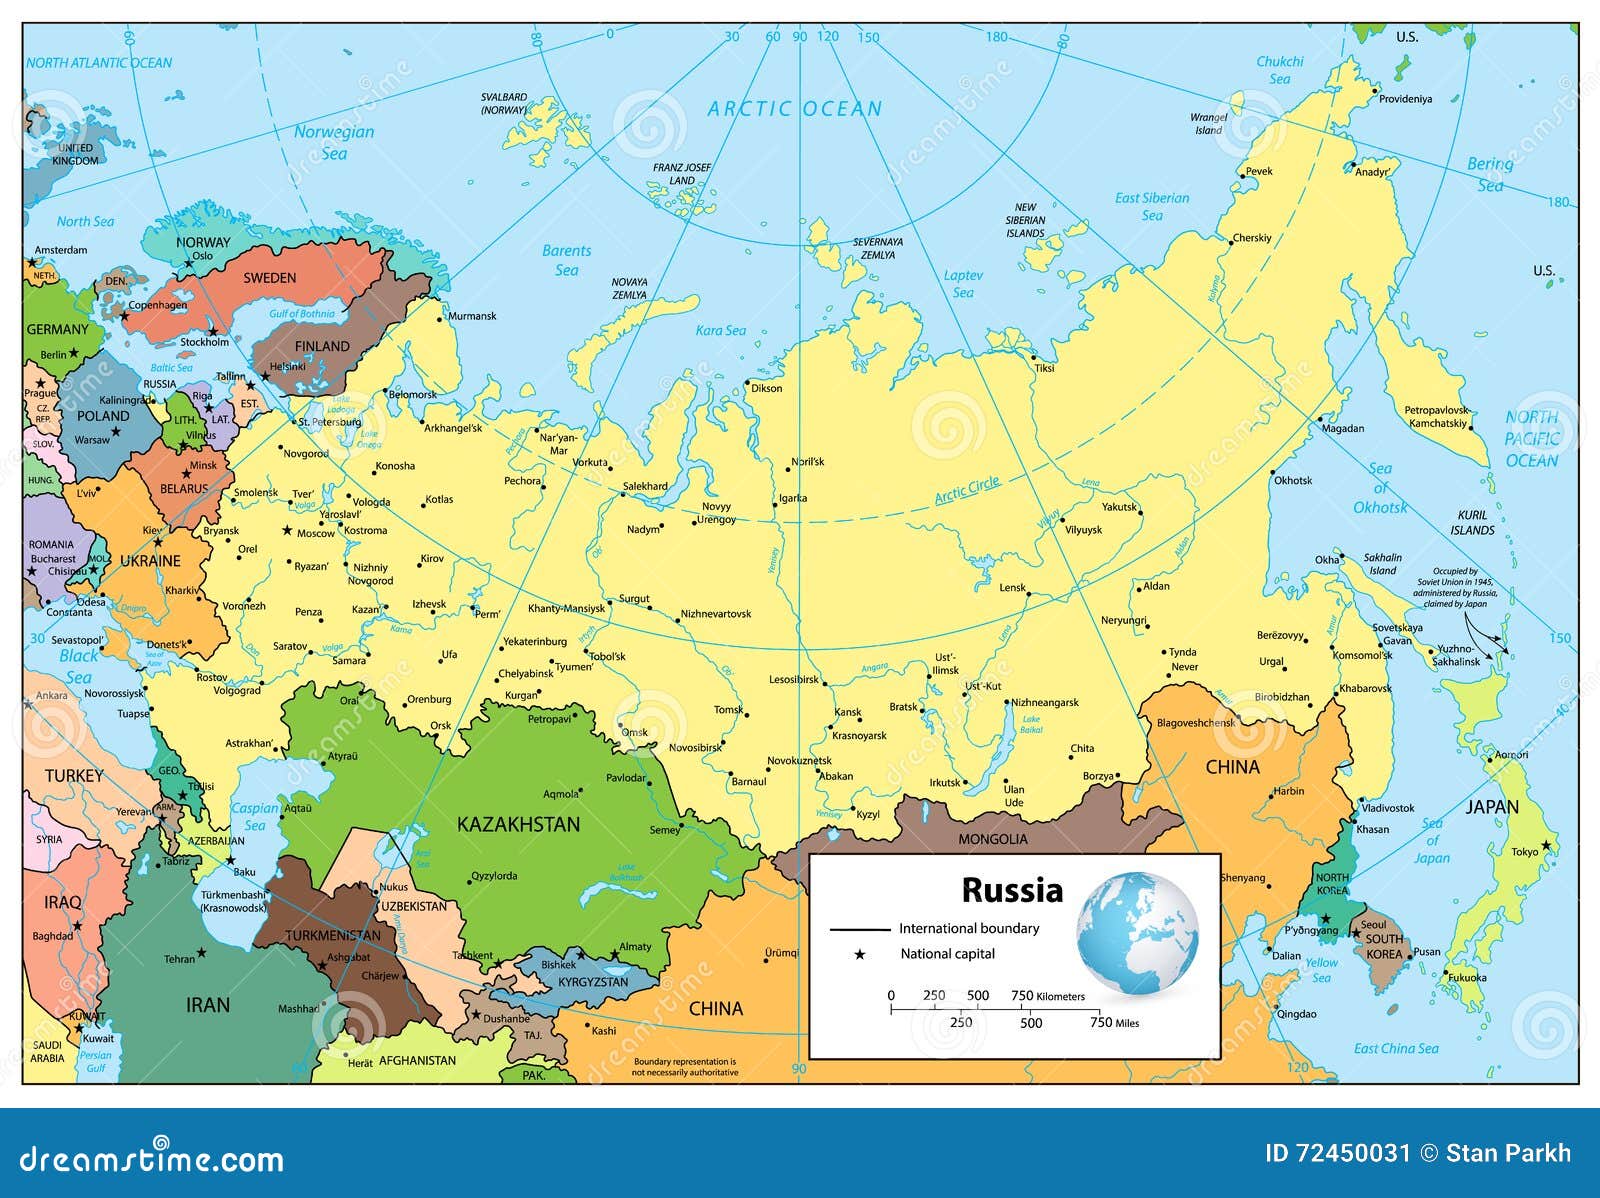 Rússia. Sistema Estadual da Federação Russa